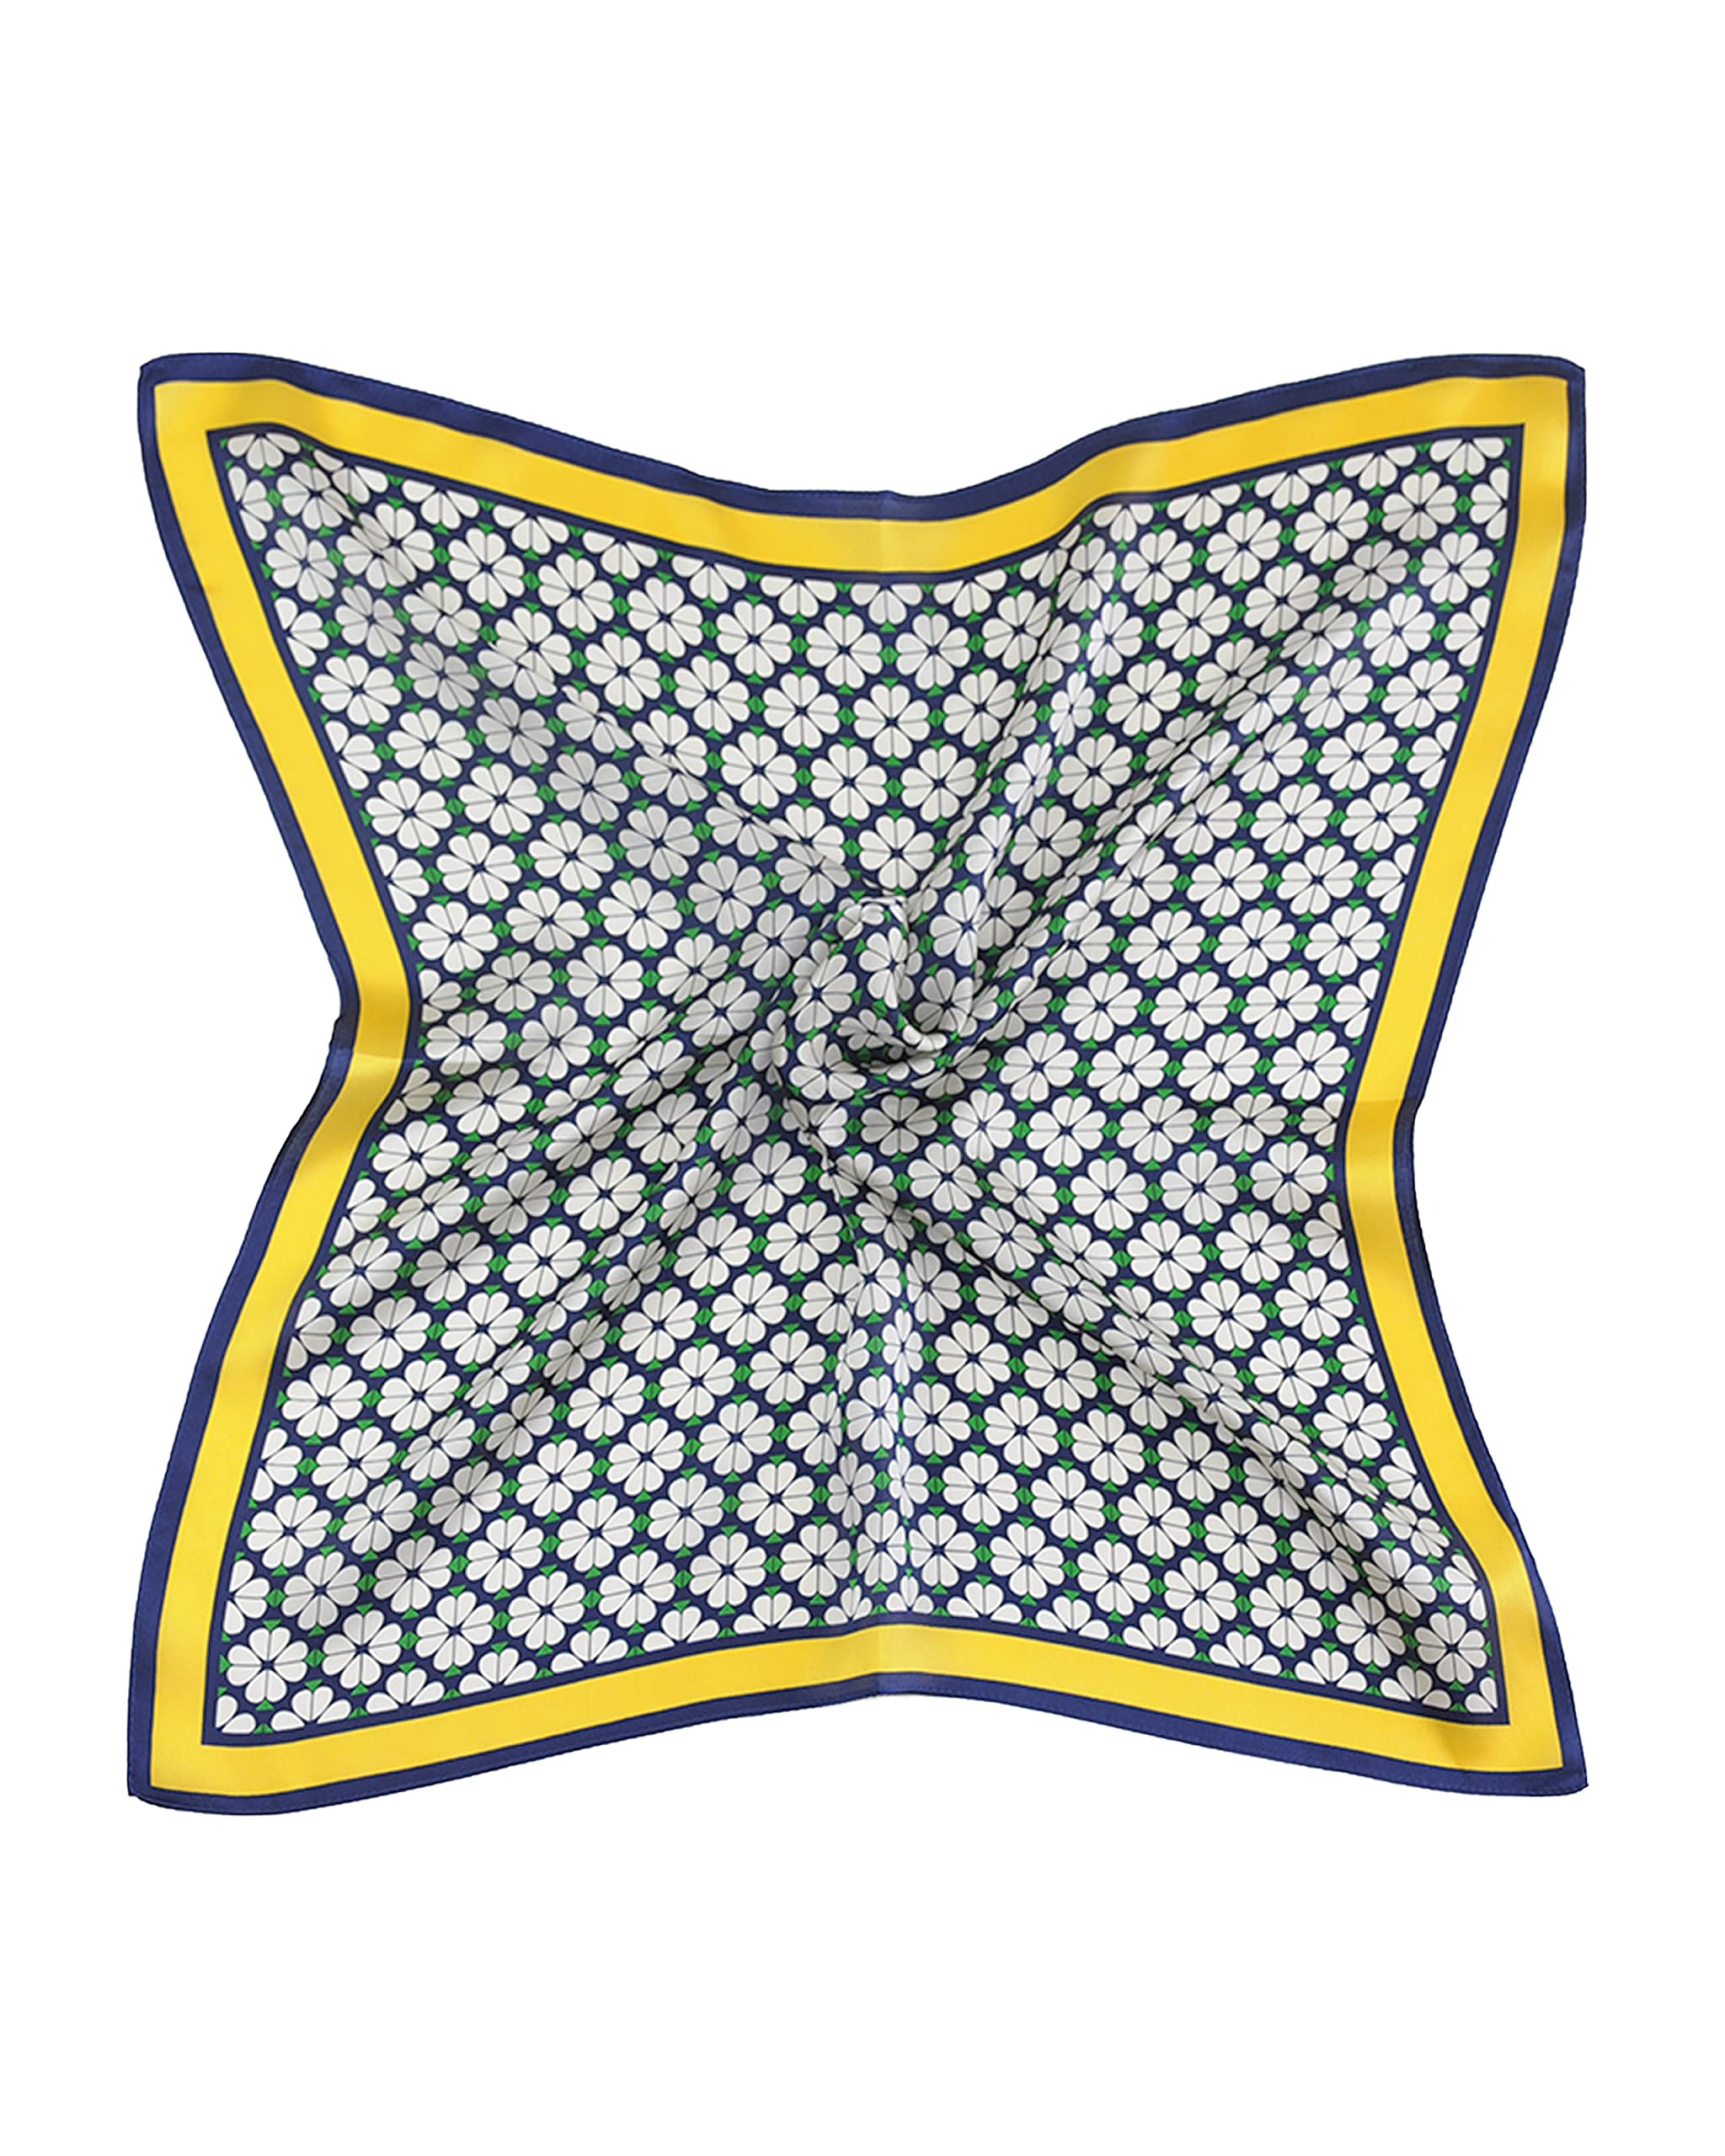 MayTree Seidentuch, buntes Halstuch für Damen aus 100% Maulbeer-Seide, quadratisch weisser Klee 53x53 grünmit leuchtend gelbem Rand